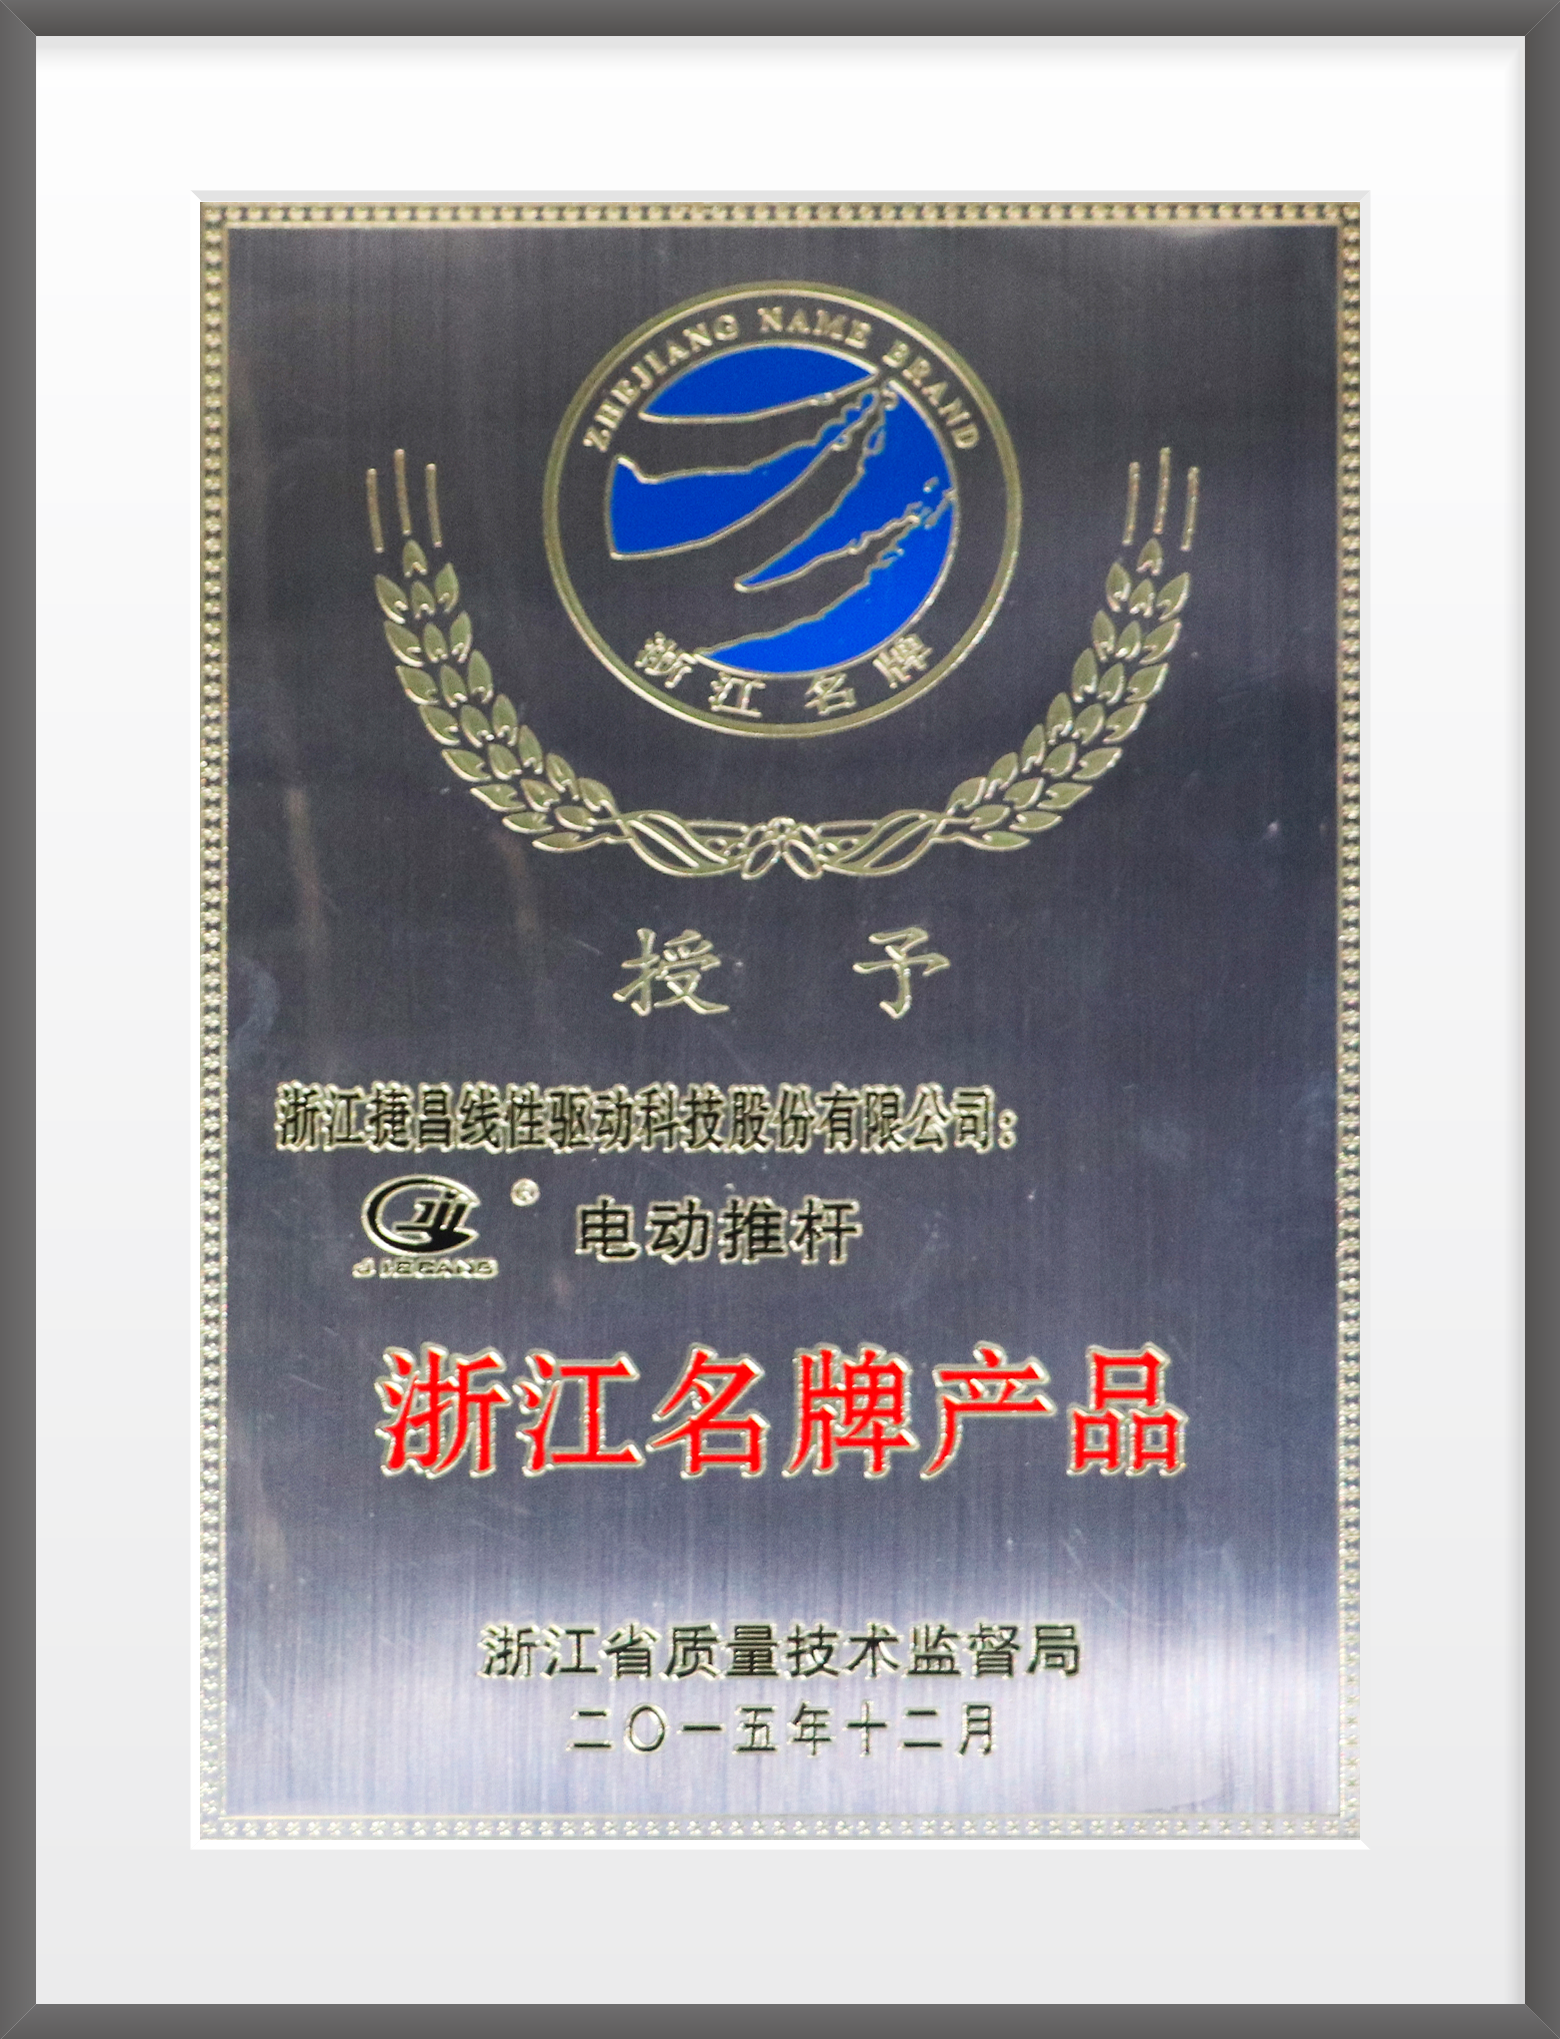 2015年，电动推杆被授予”浙江名牌产品“